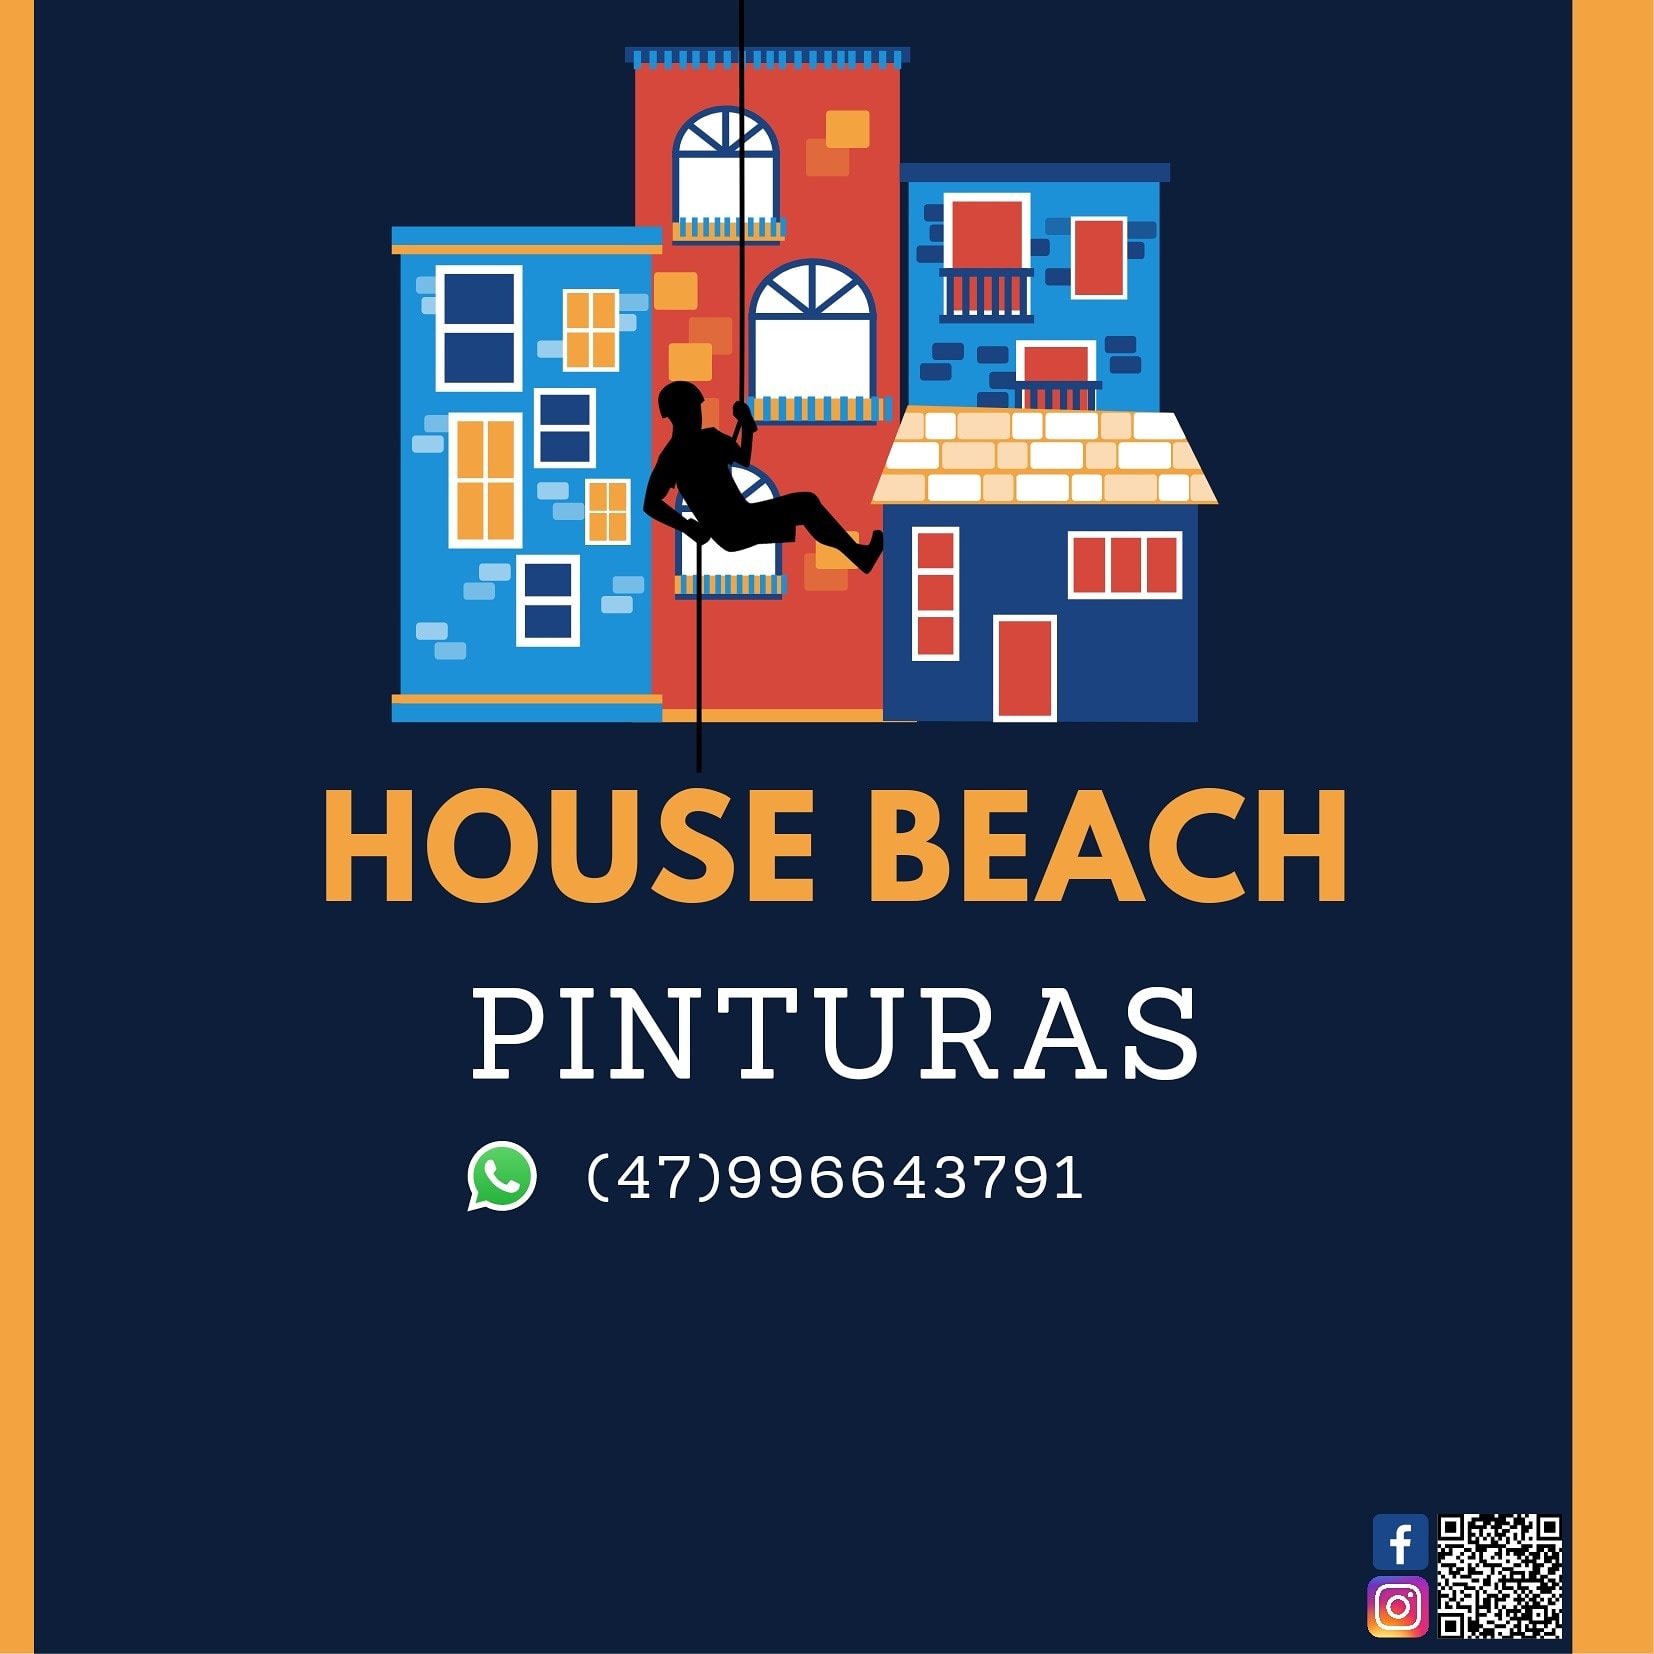 Beach House Pinturas